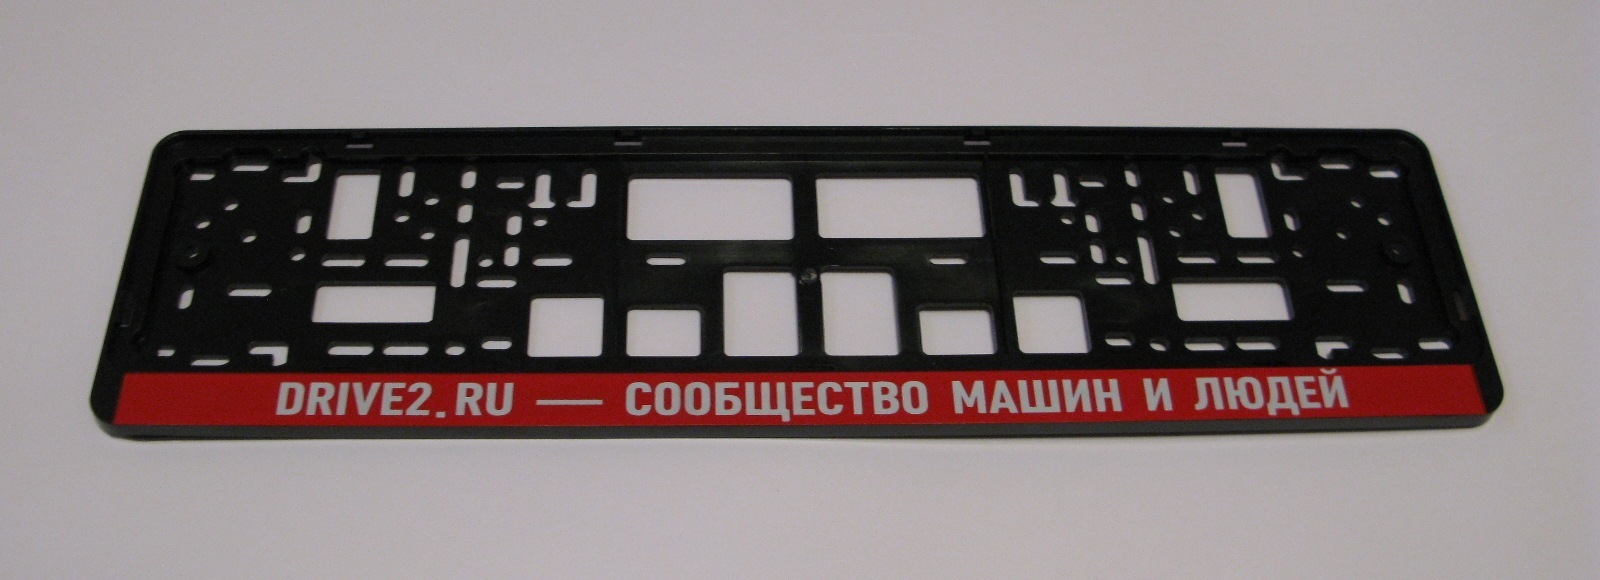 Рамки для автомобилей с надписями. Рамка номерного знака 290х170. Рамка номерного знака ГАЗ 3110 красная.